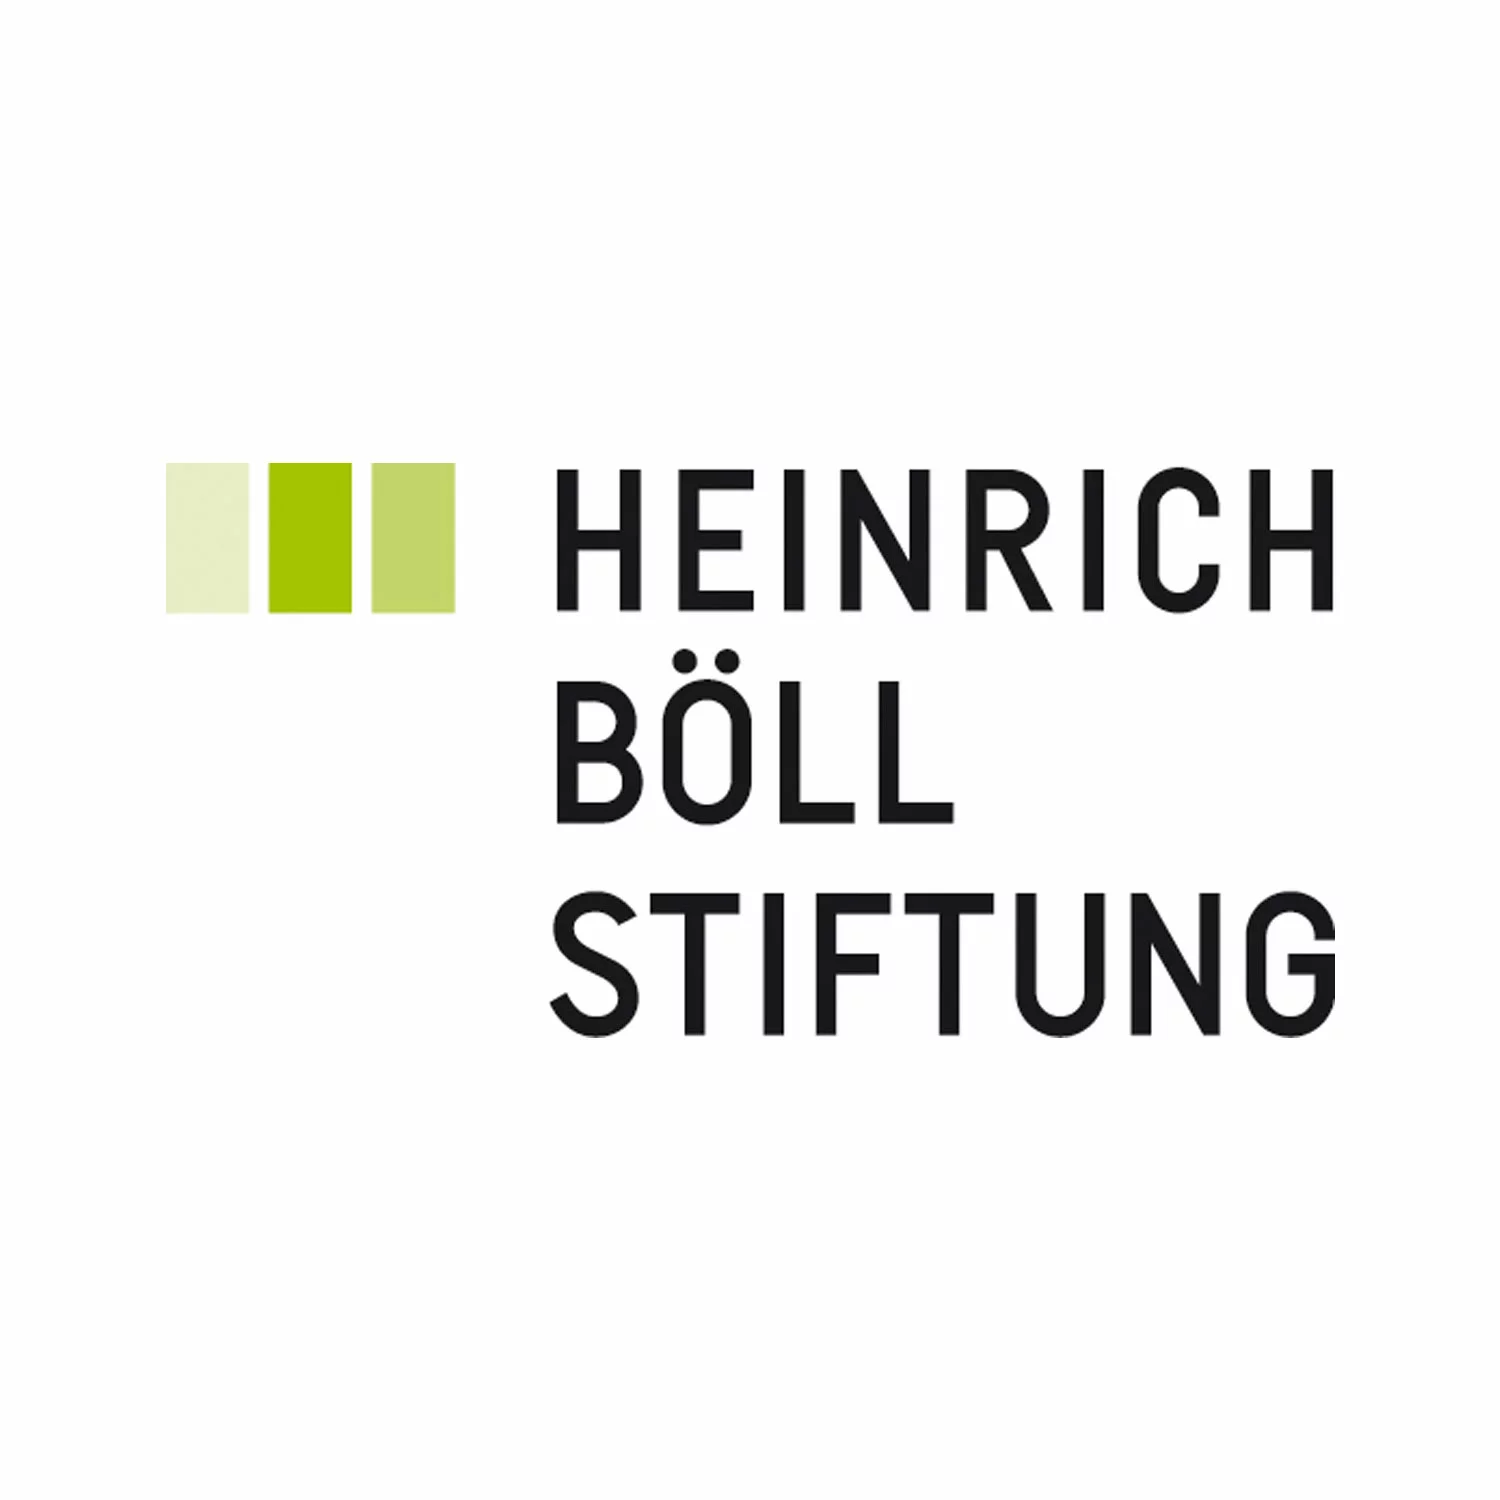 Auf diesem Bild ist das Logo der Heinrich Böll Stiftung abgebildet. Es enthält neben dem Titel der Stiftung in schwarzer Schrift drei Vierecke in verschiedenen Grün-Tönen gefärbt.